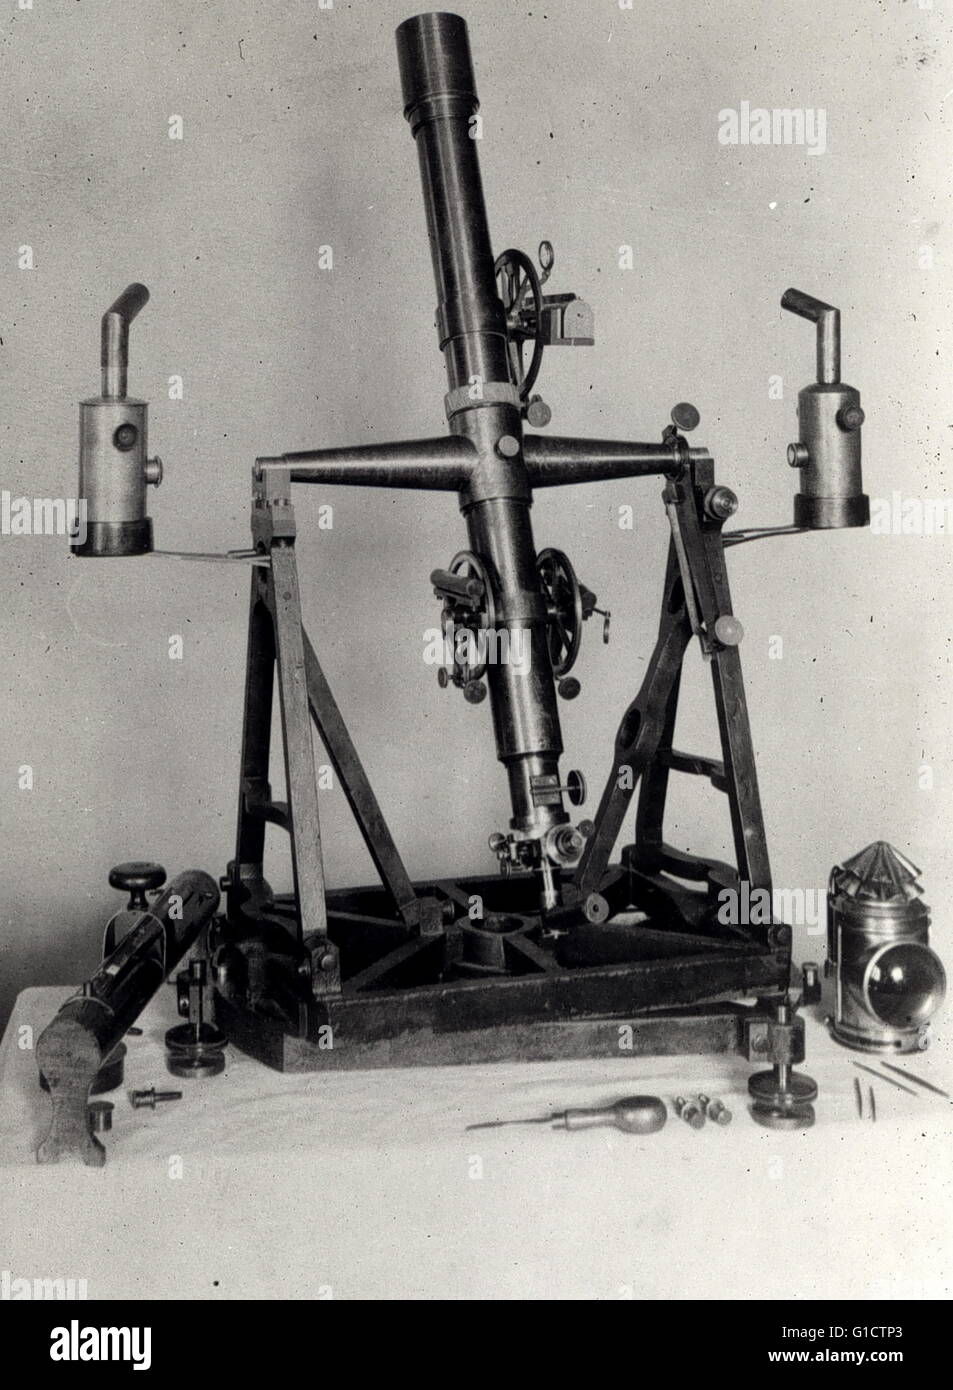 Télescope méridien géodésique de 1890. L'astronome meridian utilise un télescope spécial appelé un cercle de transit Banque D'Images